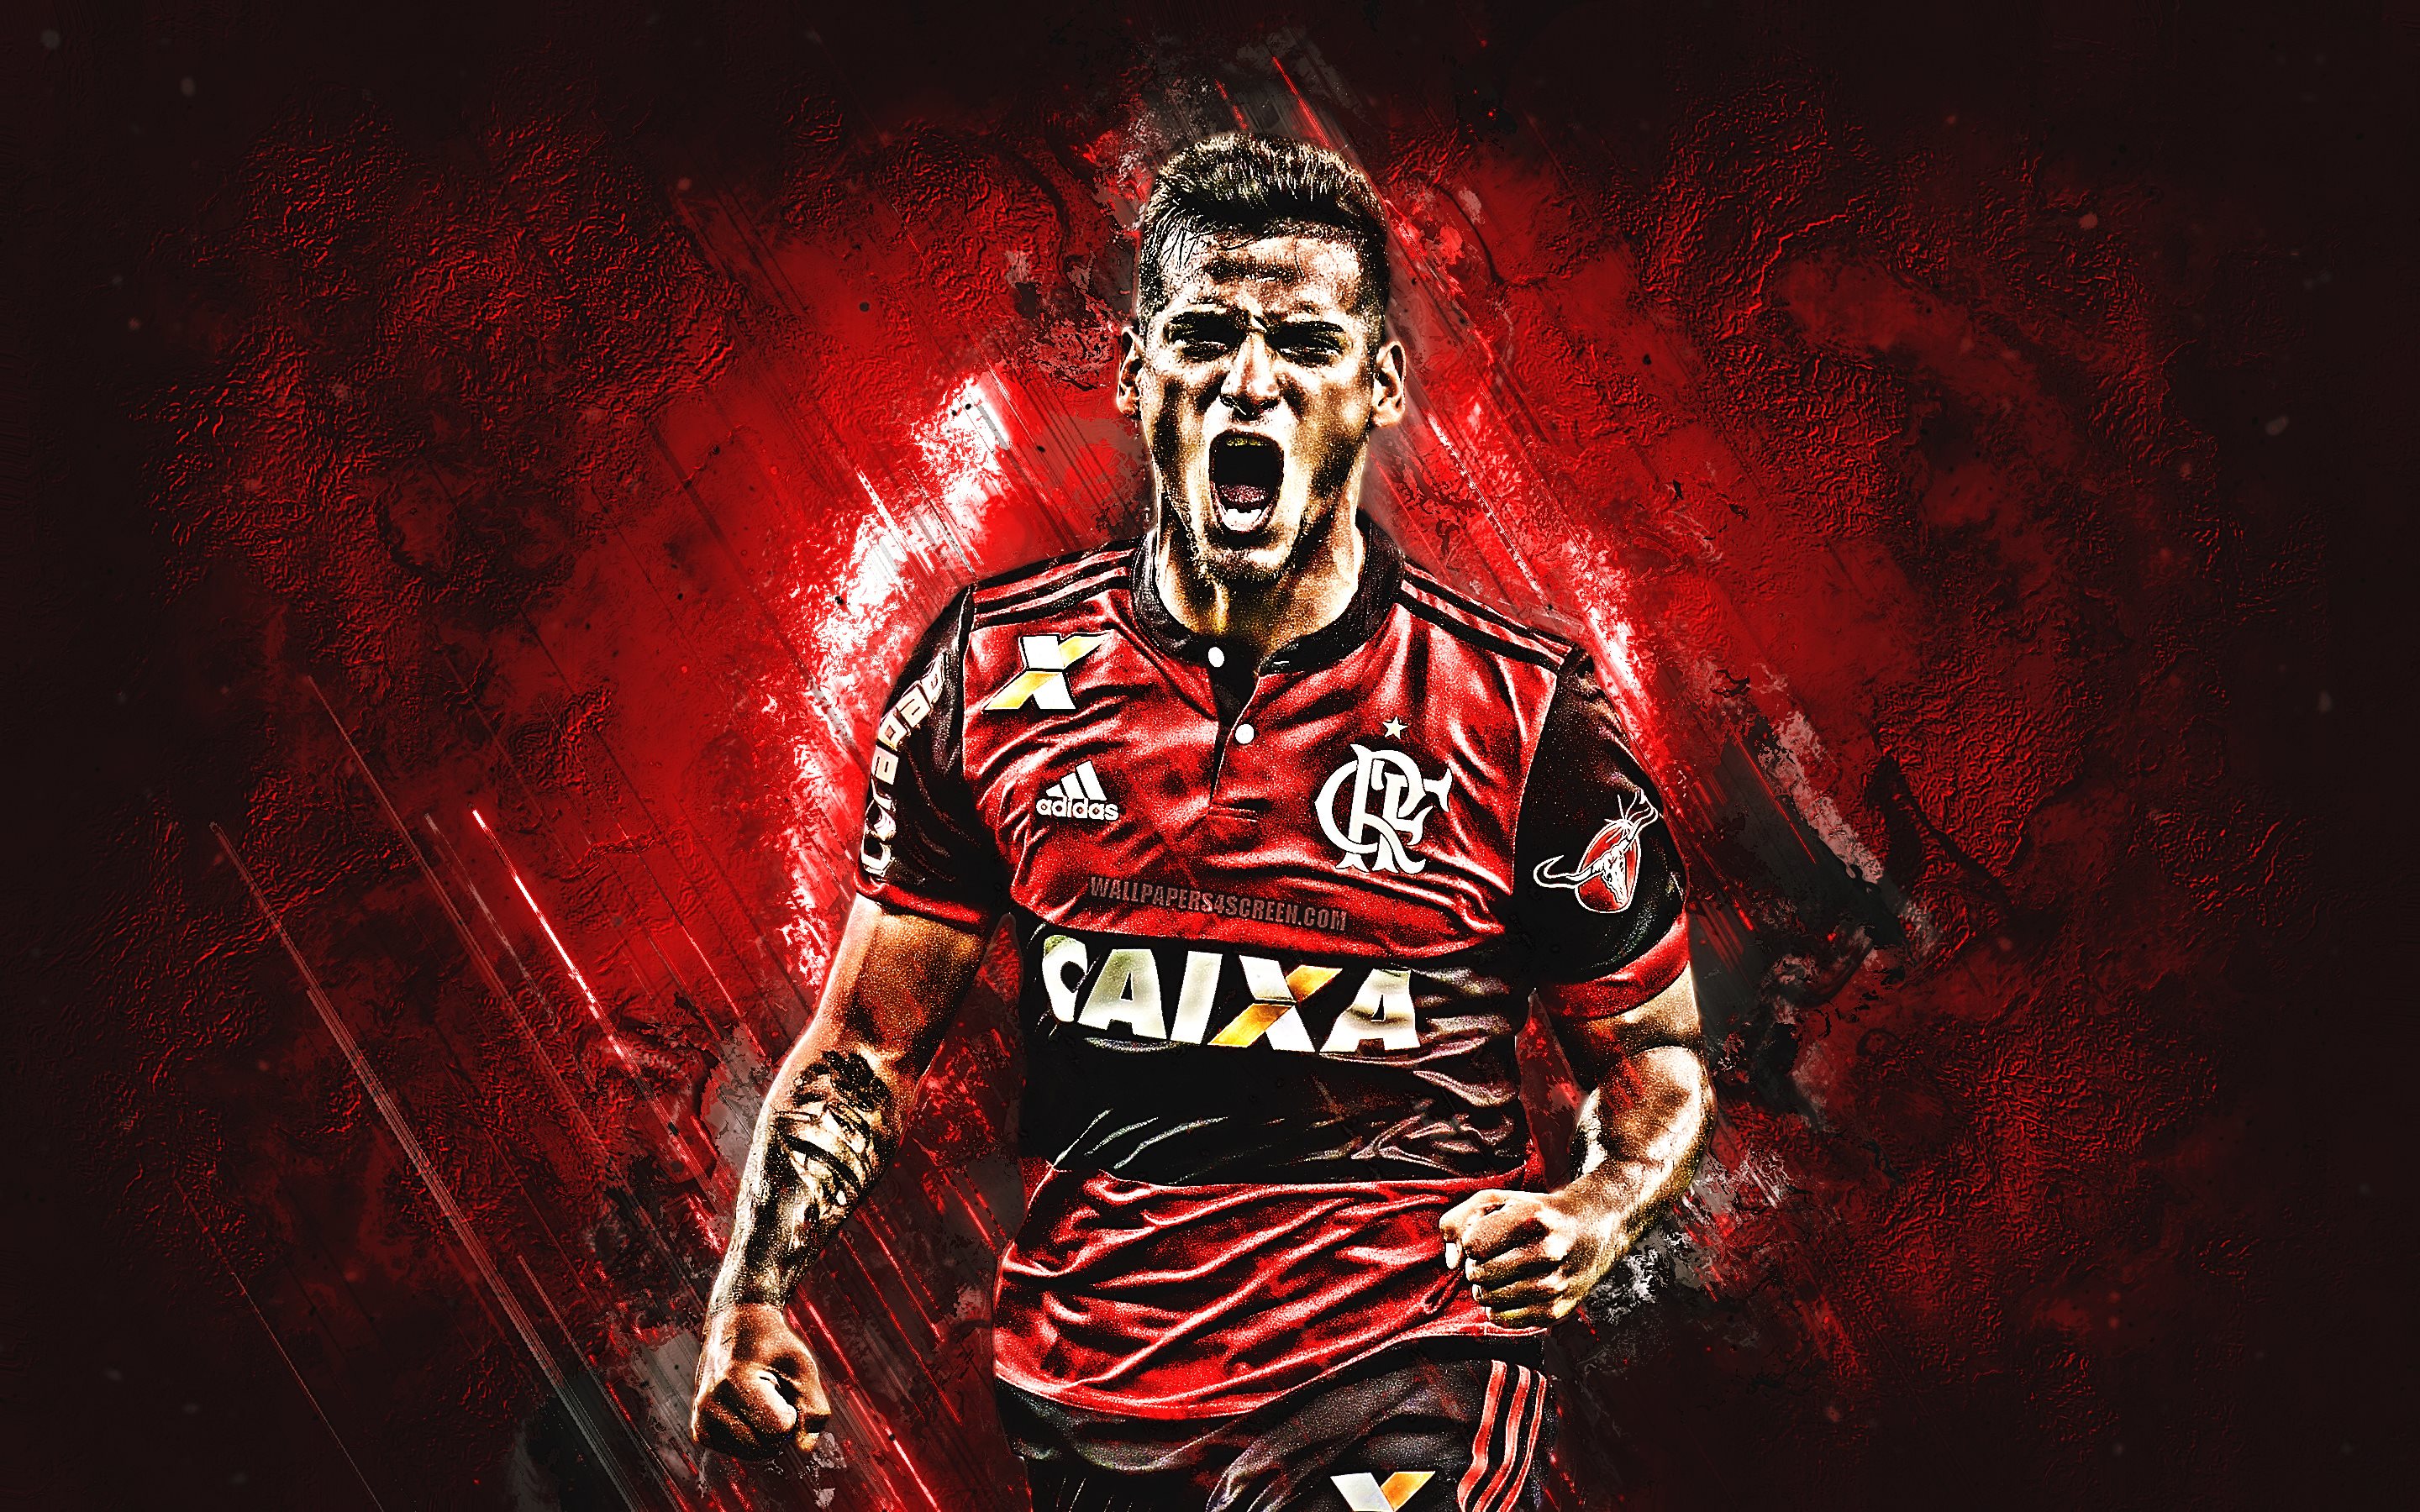 ダウンロード画像 ミゲルtrauco グランジ アテロドフラメンゴfc 赤石 サッカー Trauco ブラジルセリエa ペルーサッカー選手 目標 ブラジル 画面の解像度 2880x1800 壁紙デスクトップ上